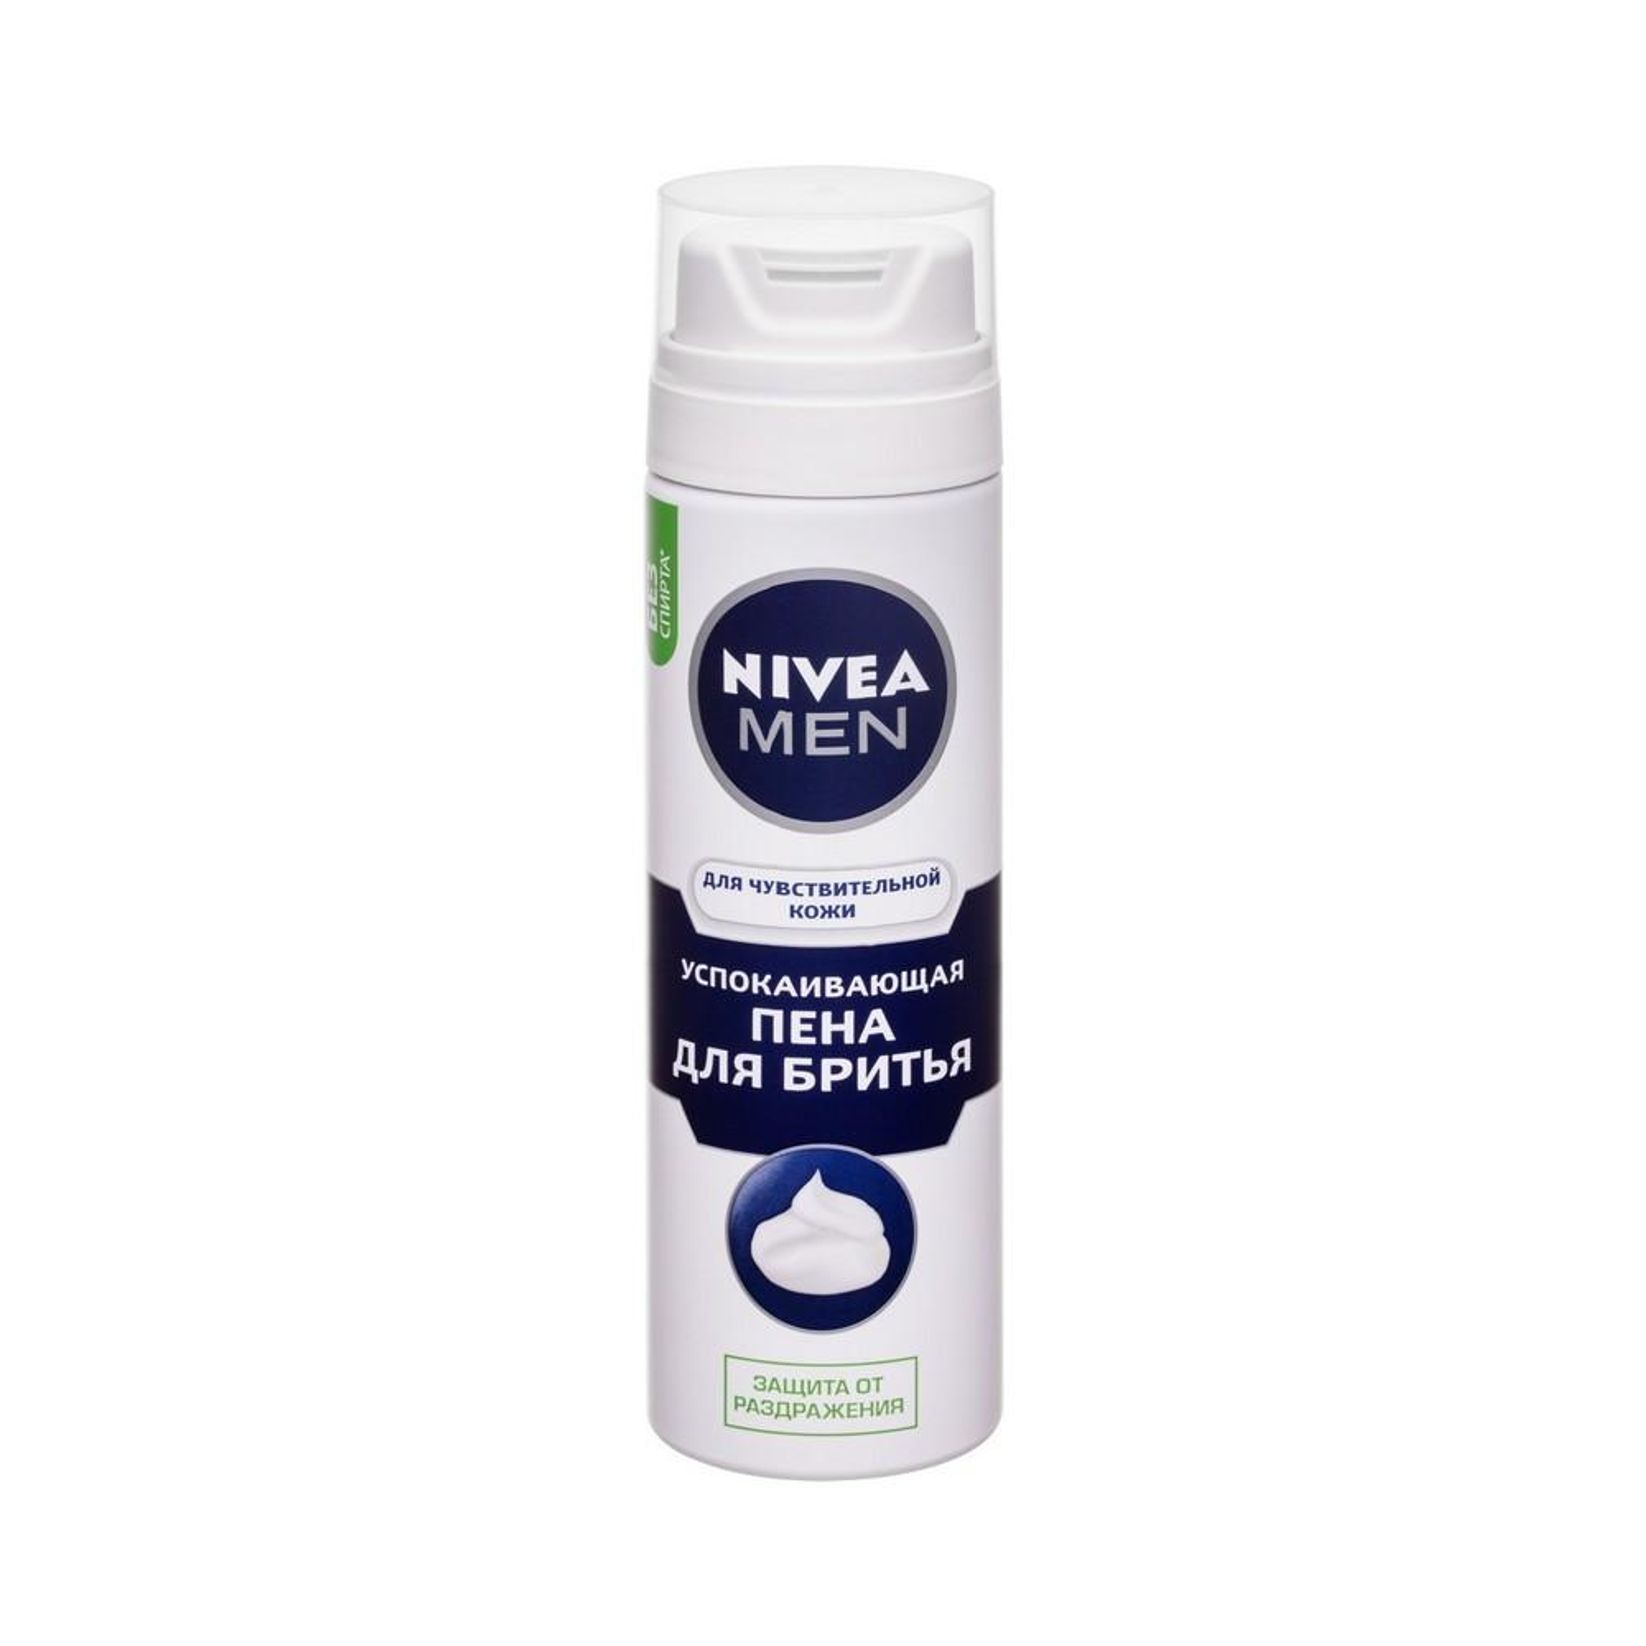 NIVEA MEN Пена для бритья для чувствительной кожи успокаивающая, 200 мл